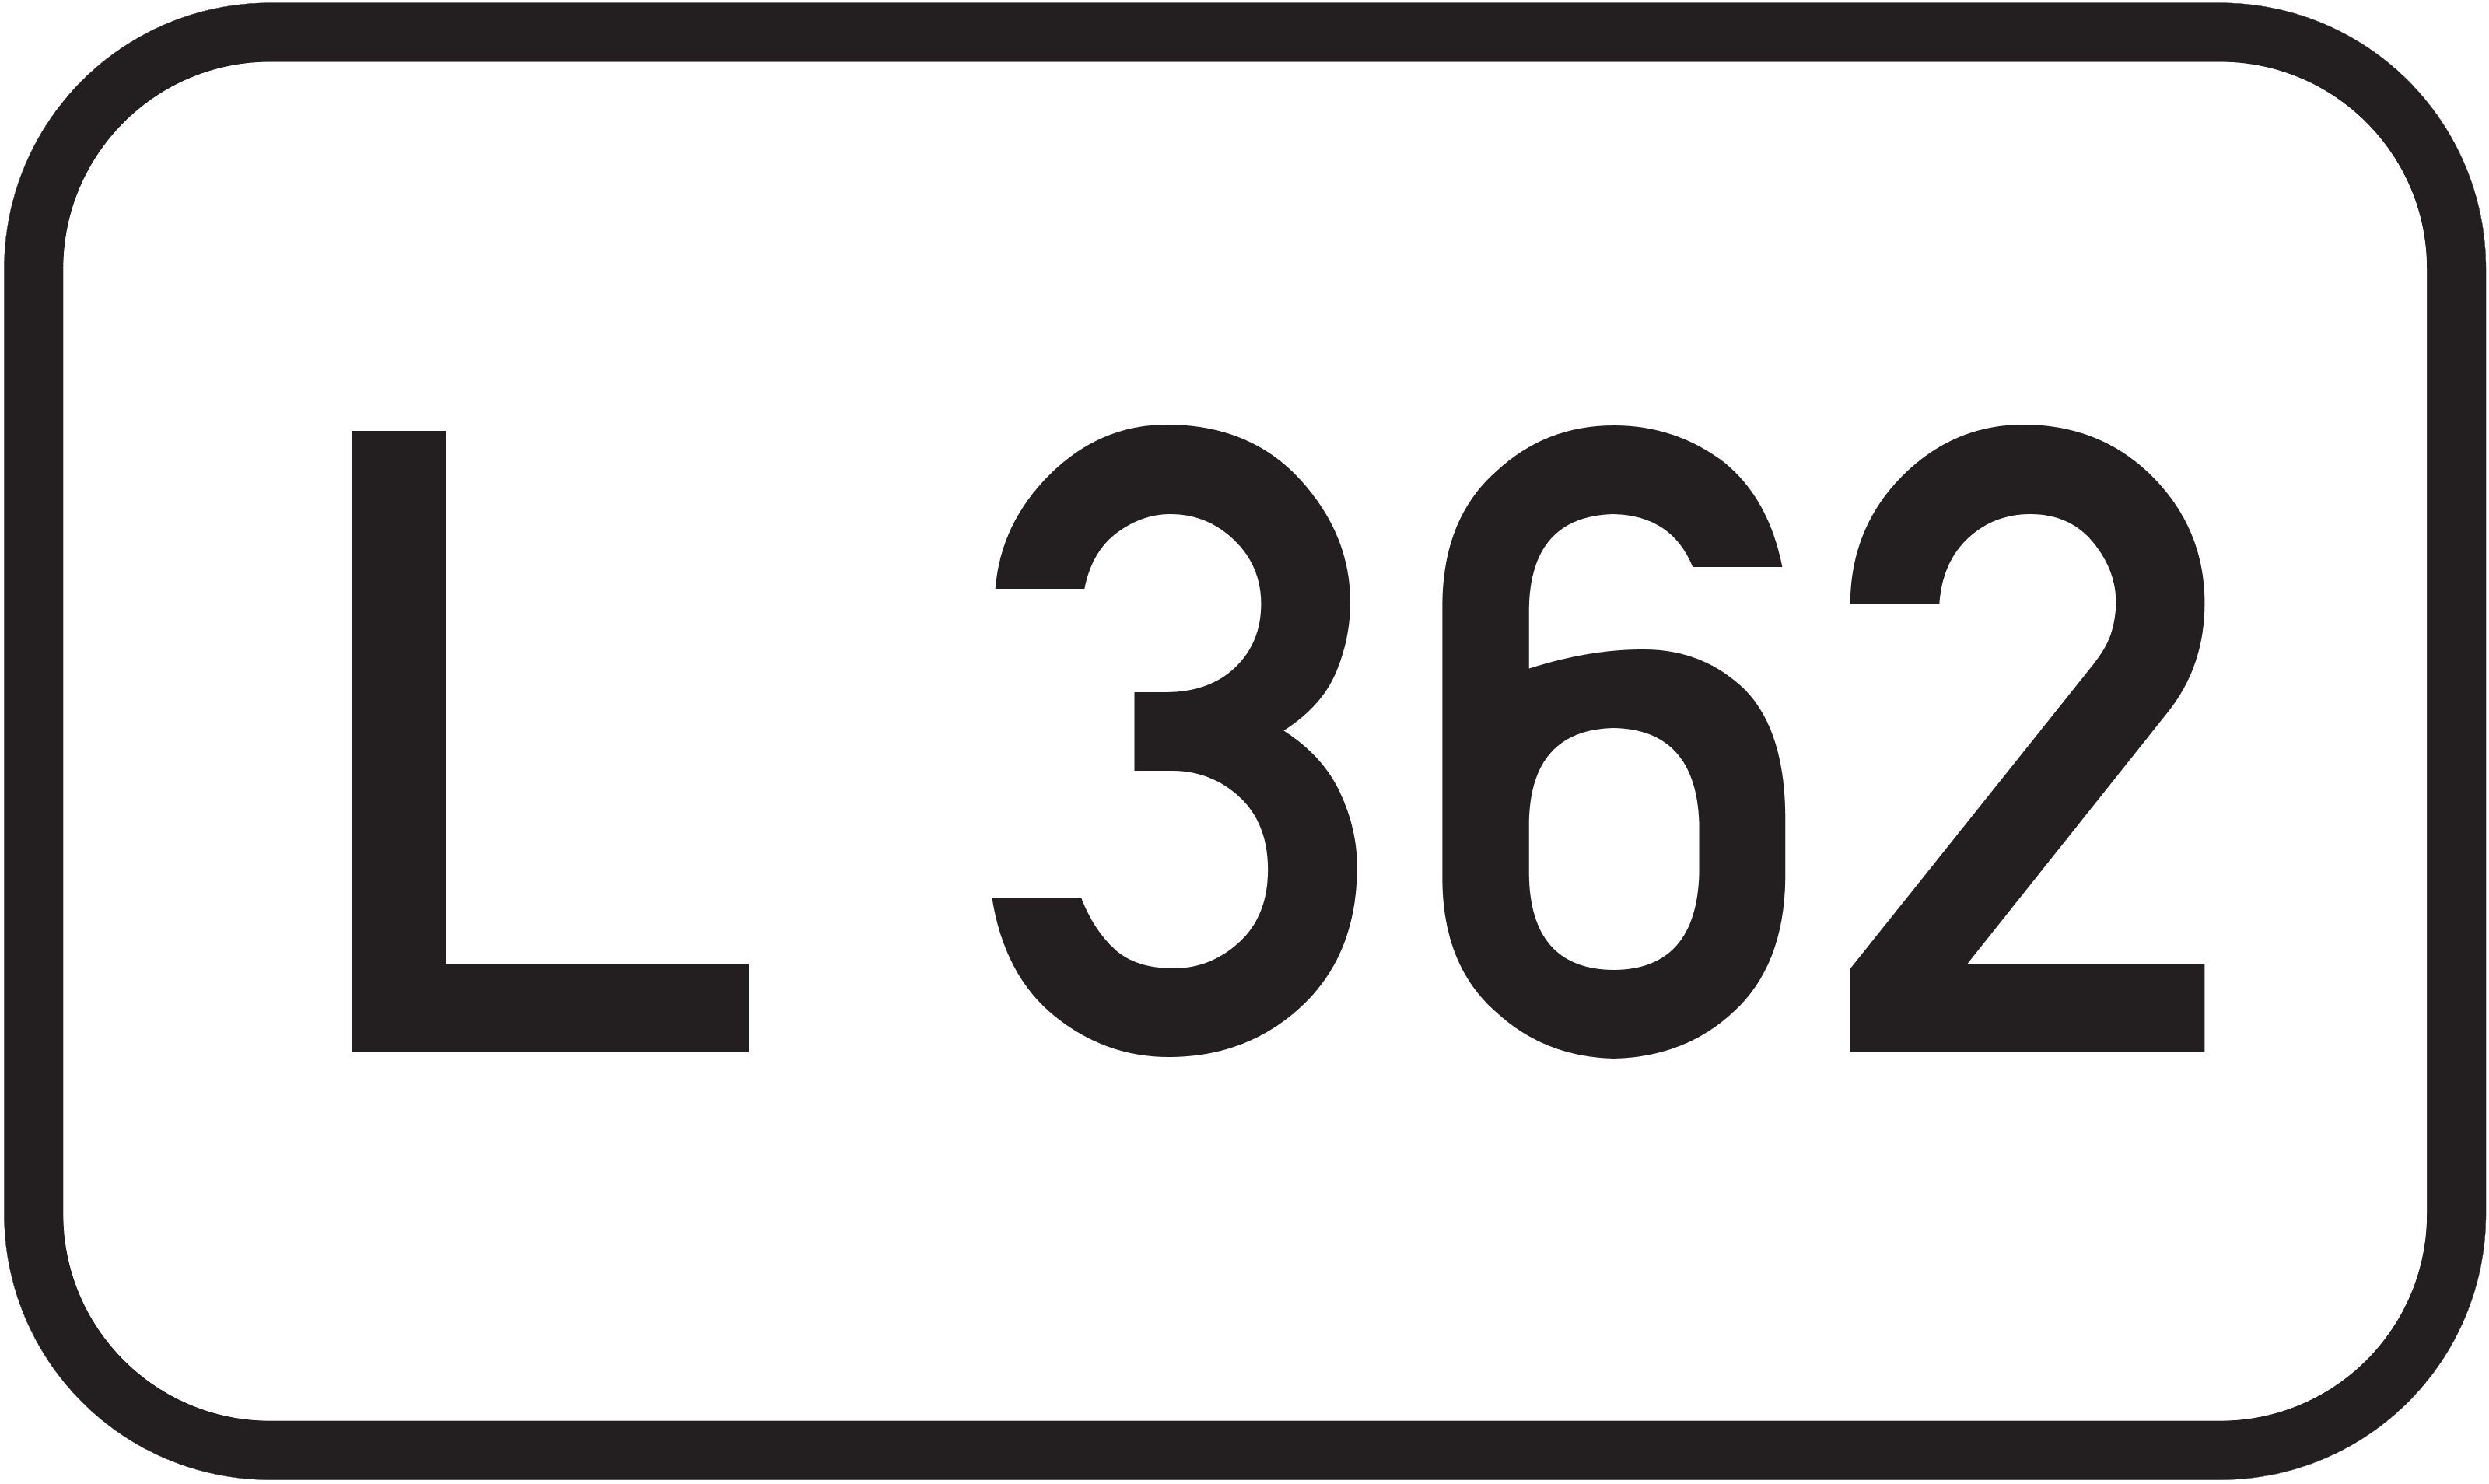 Landesstraße L 362